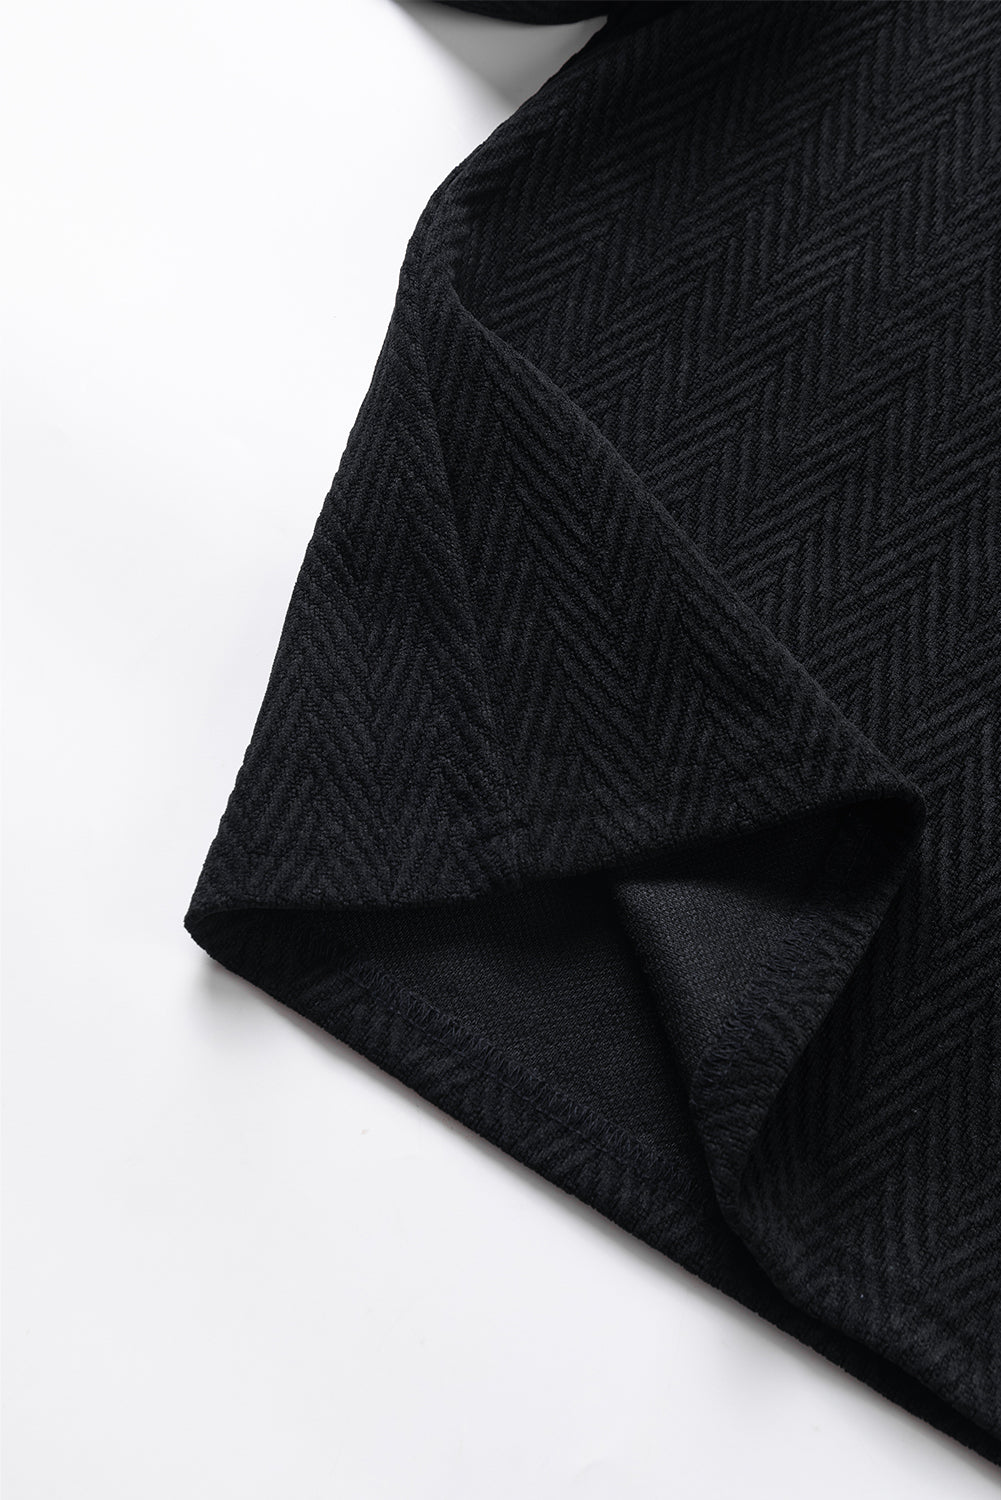 Crna jednobojna bluza s puf rukavima s lažnim ovratnikom